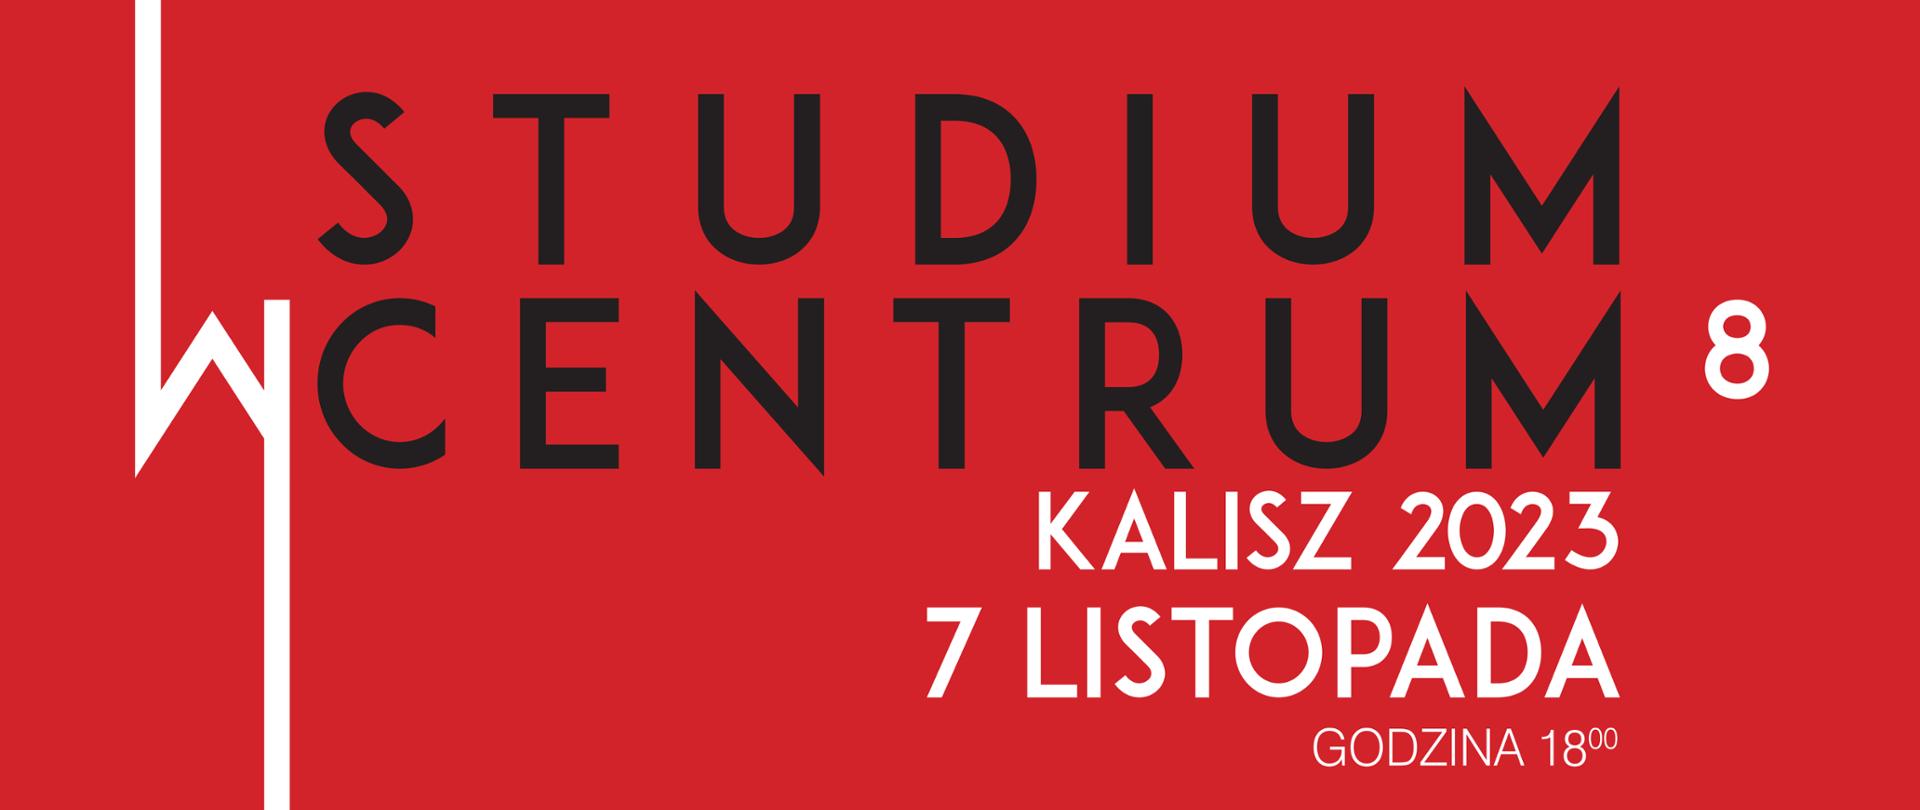 Czerwony plakat z czarno-białym napisem "Studium w Centrum" Kalisz 2023 7 listopada Godzina 18:00. 